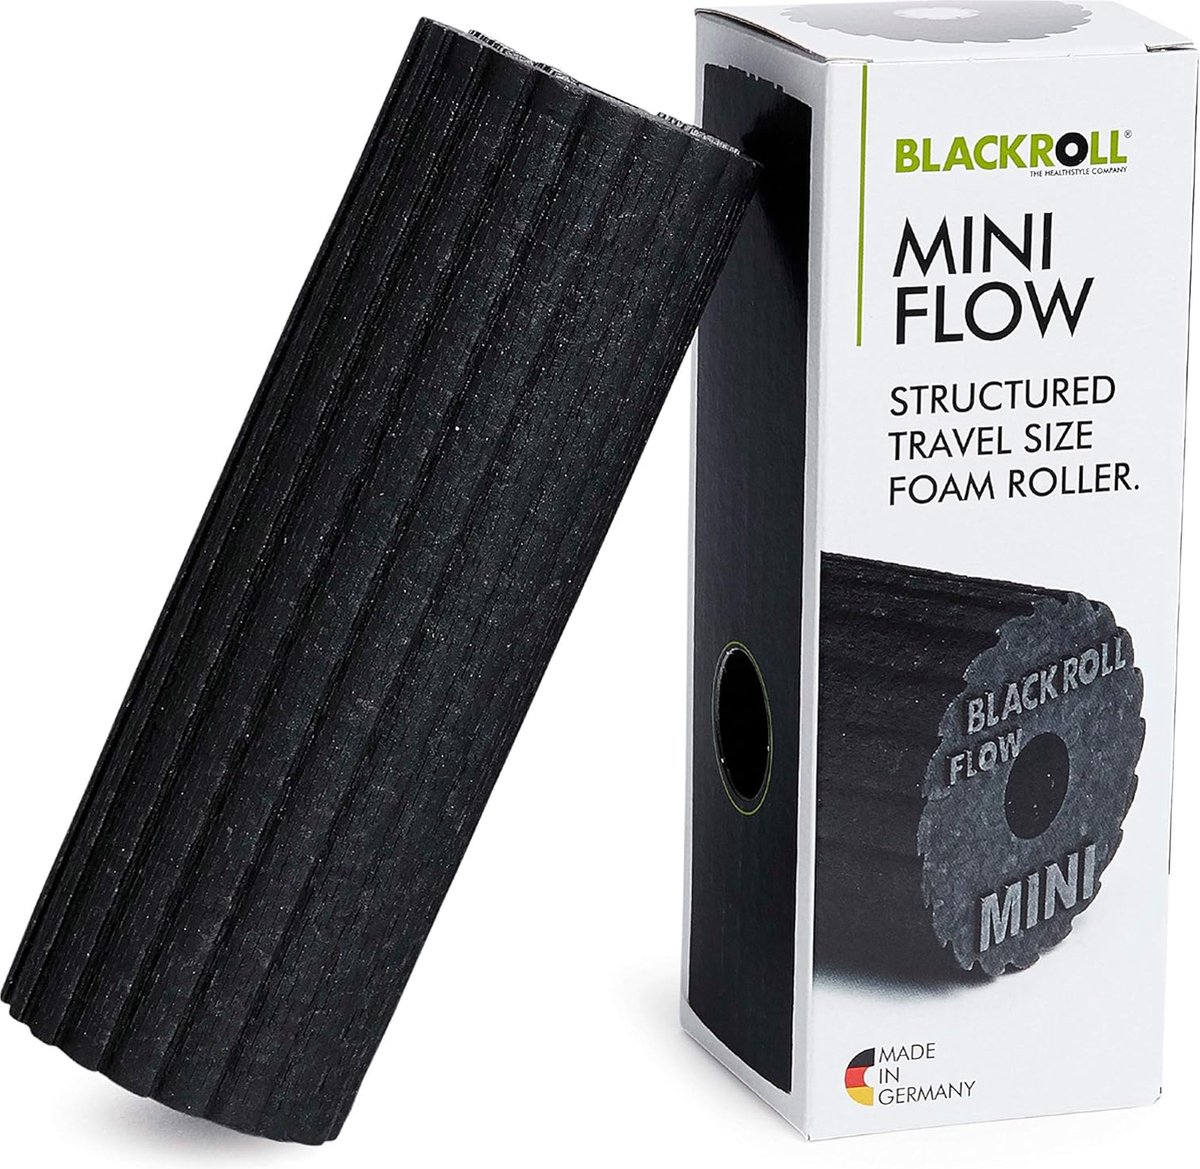 MINI FLOW foamroller voor zelfmassage van armen benen en voeten - draagbare massage roller voor onderweg 15 x 6 cm